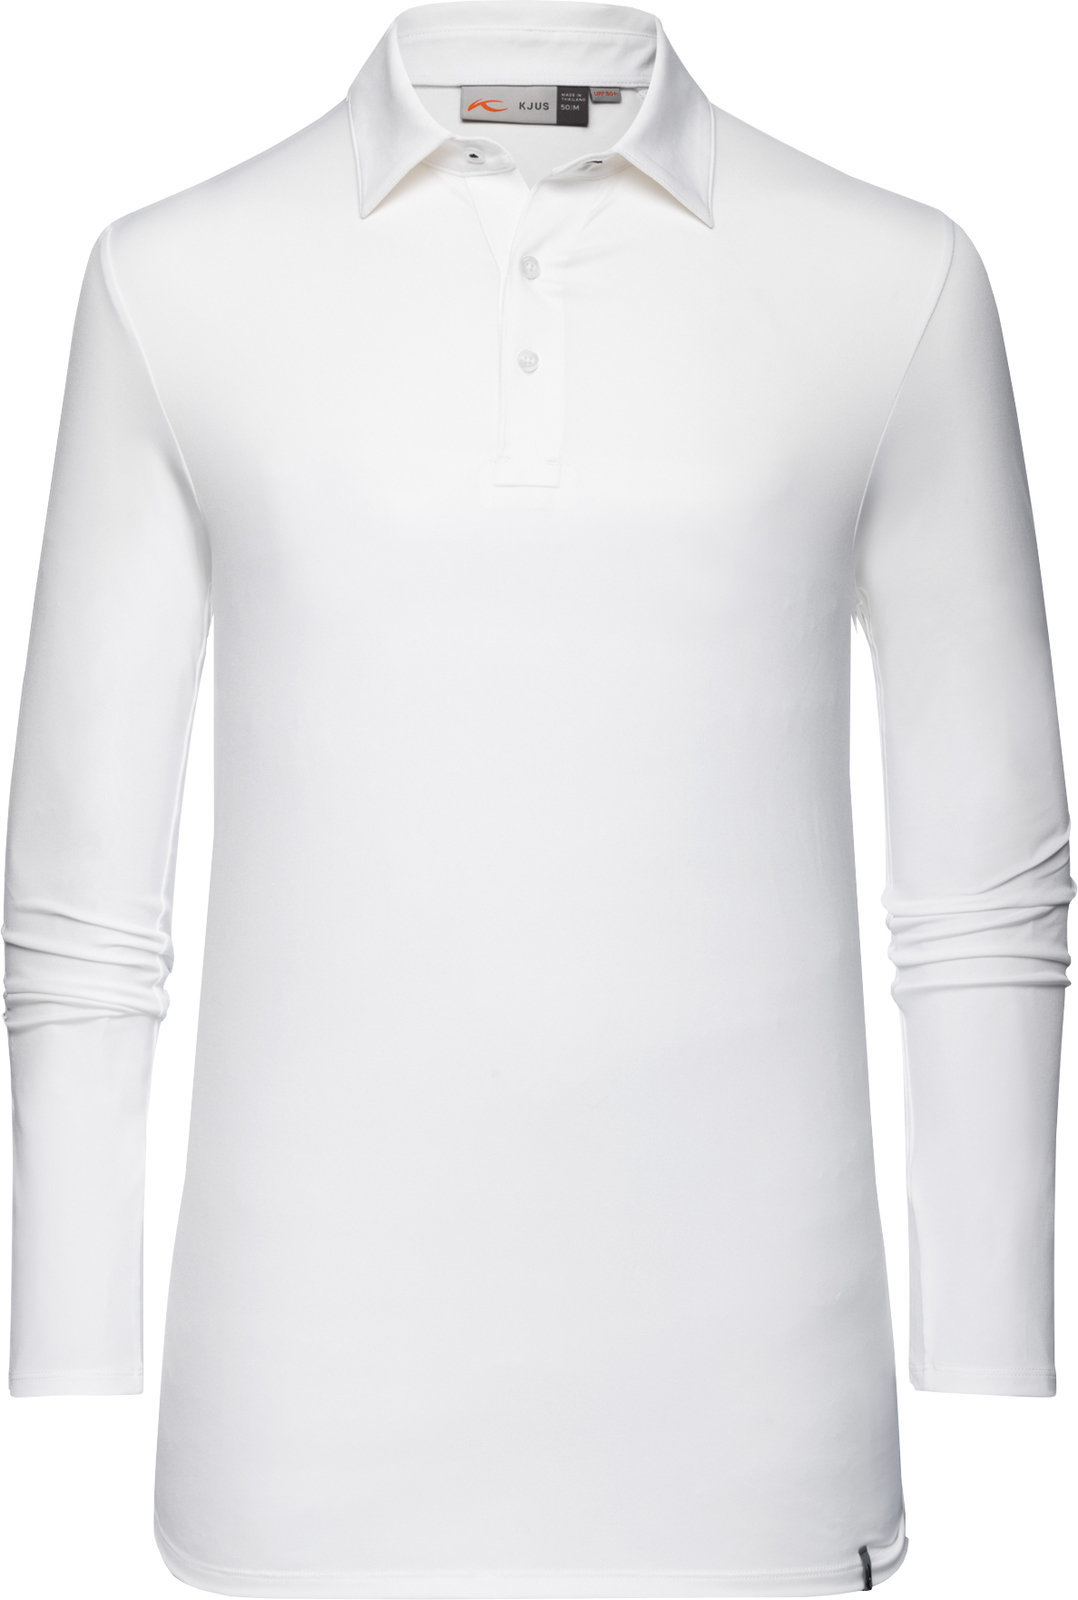 Polo košeľa Kjus Soren Solid White 54